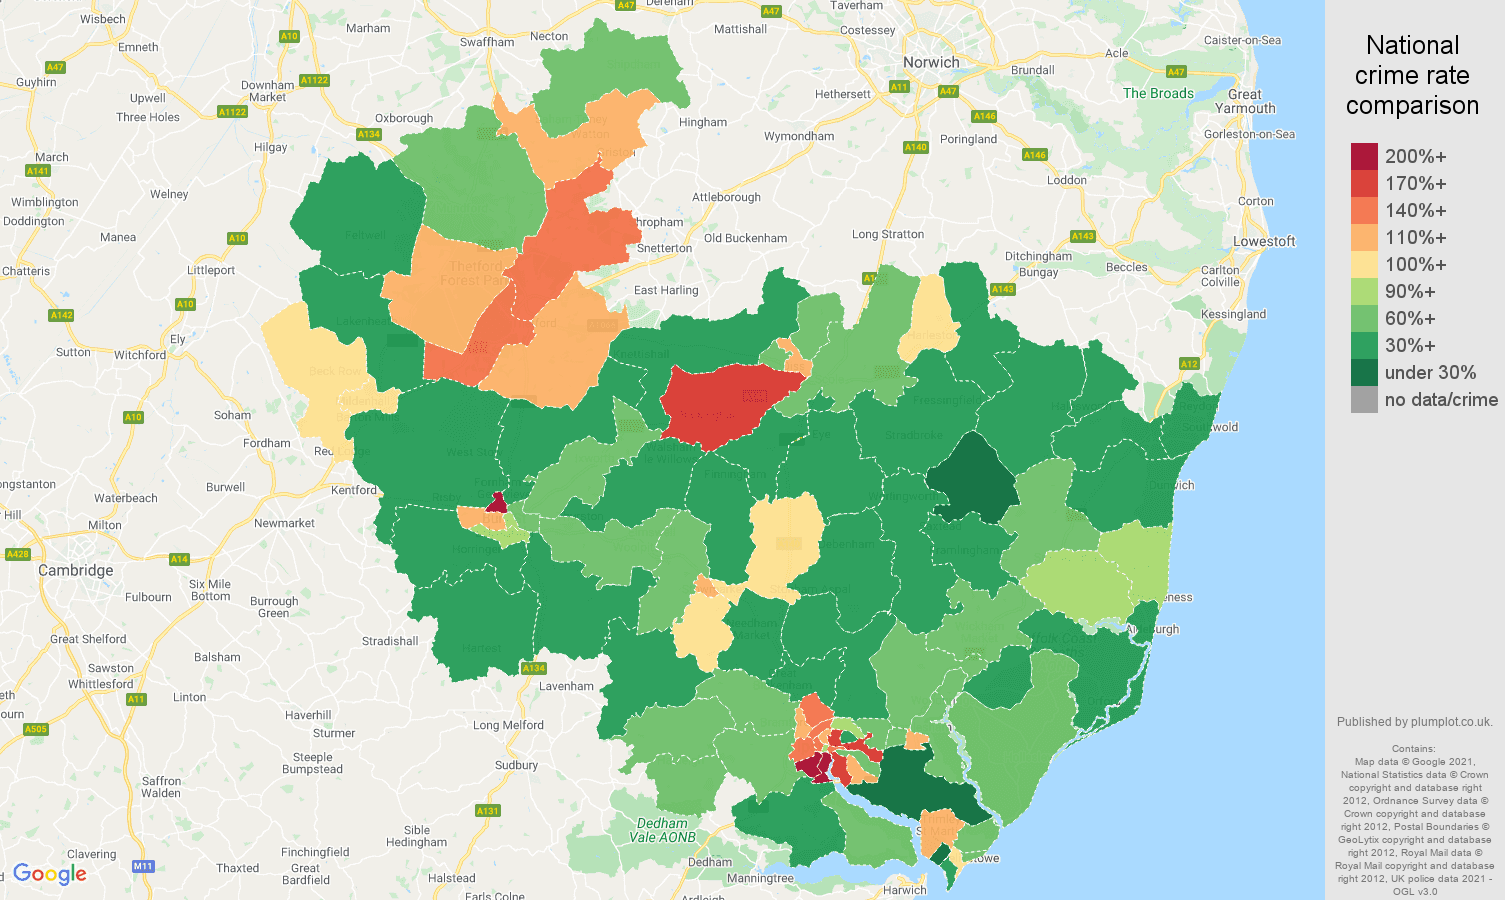 Ipswich violent crime rate comparison map